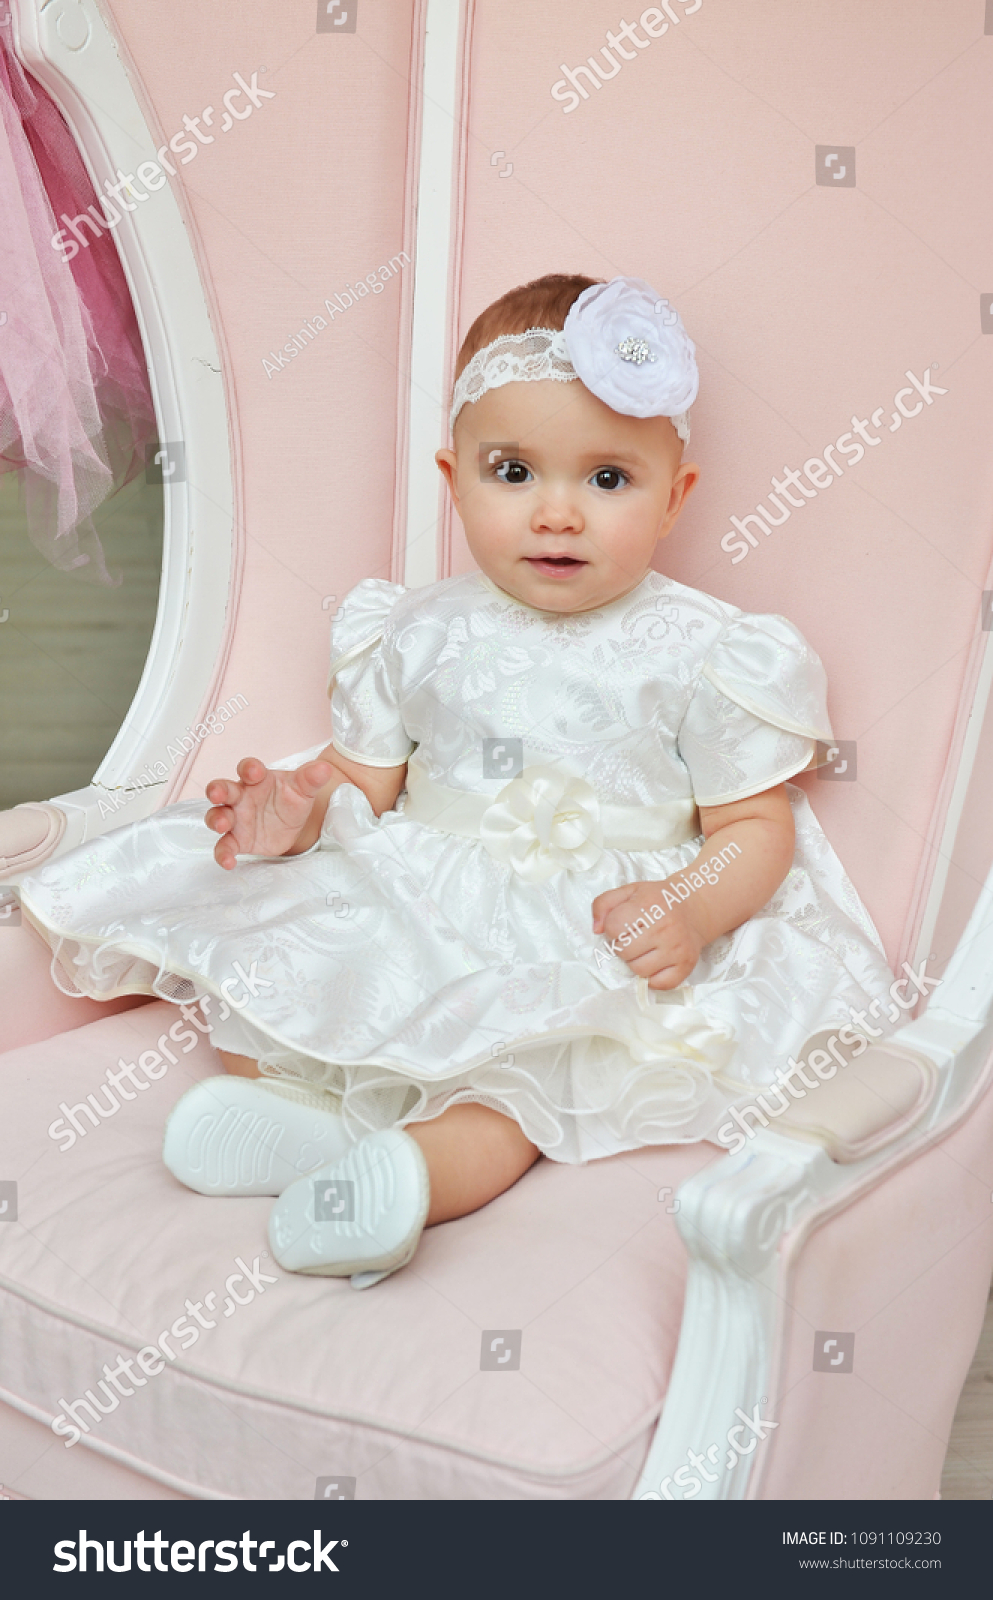 white dress socks for baby girl